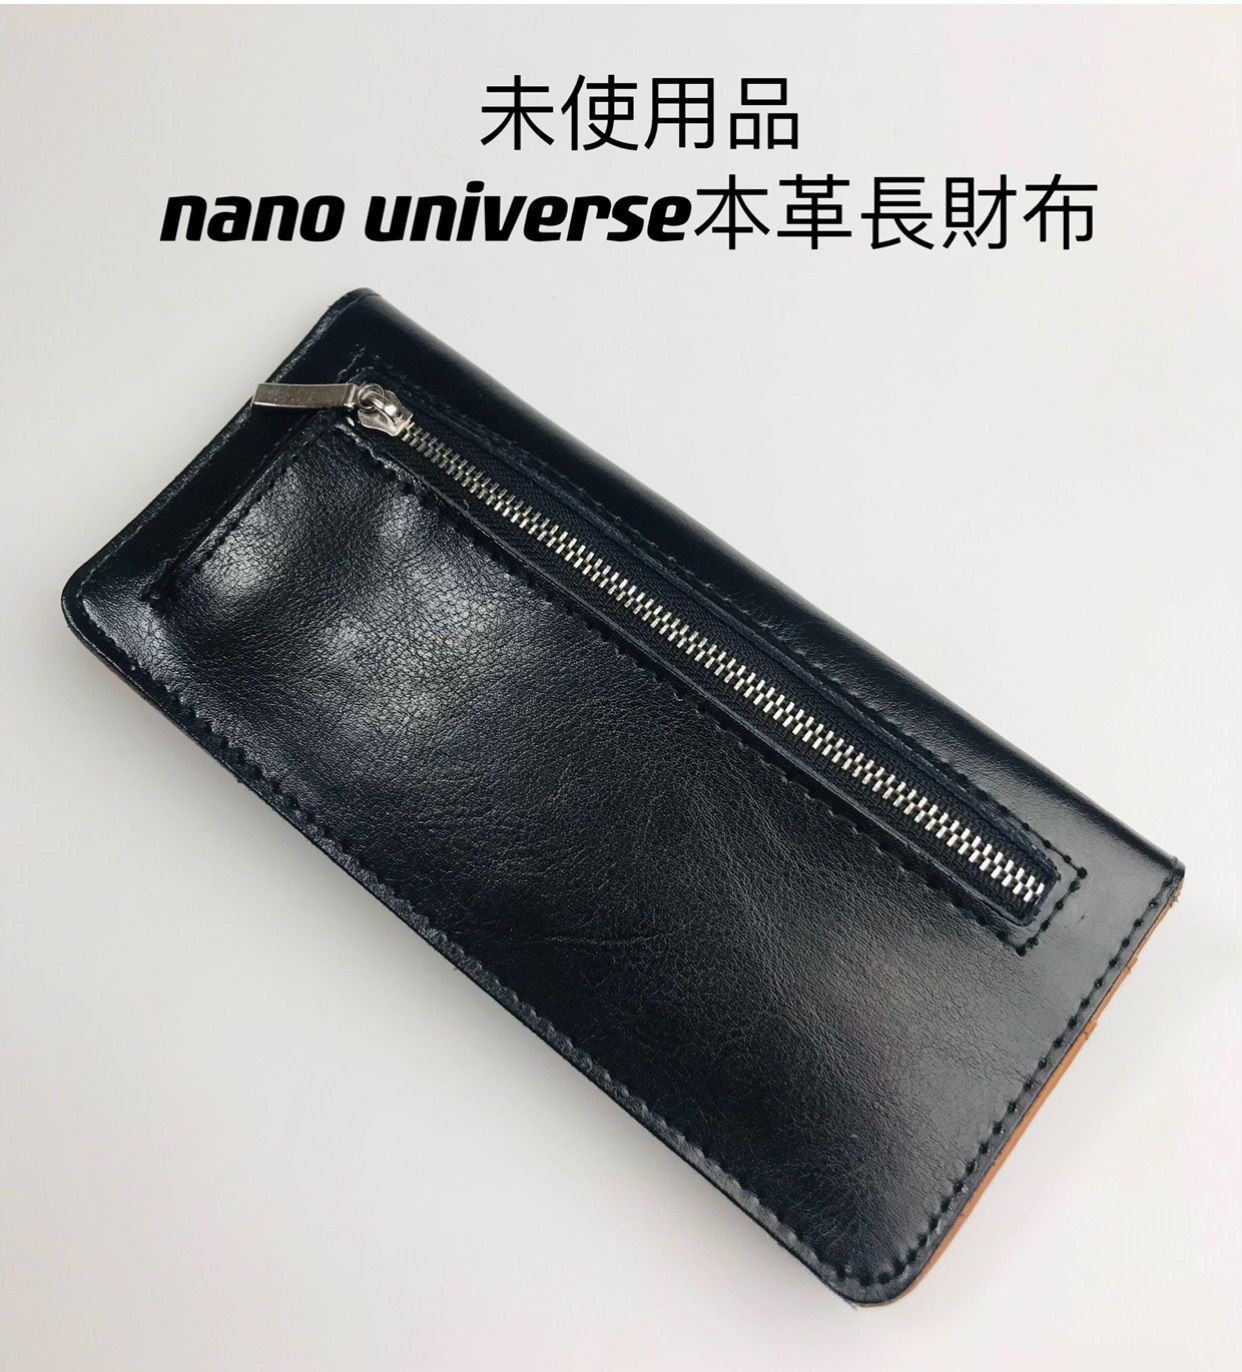 未使用品 nano universe ナノユニバース メンズ 二つ折り 長財布 レザー ブラック ブラウン - Old  Beautiful -  メルカリ